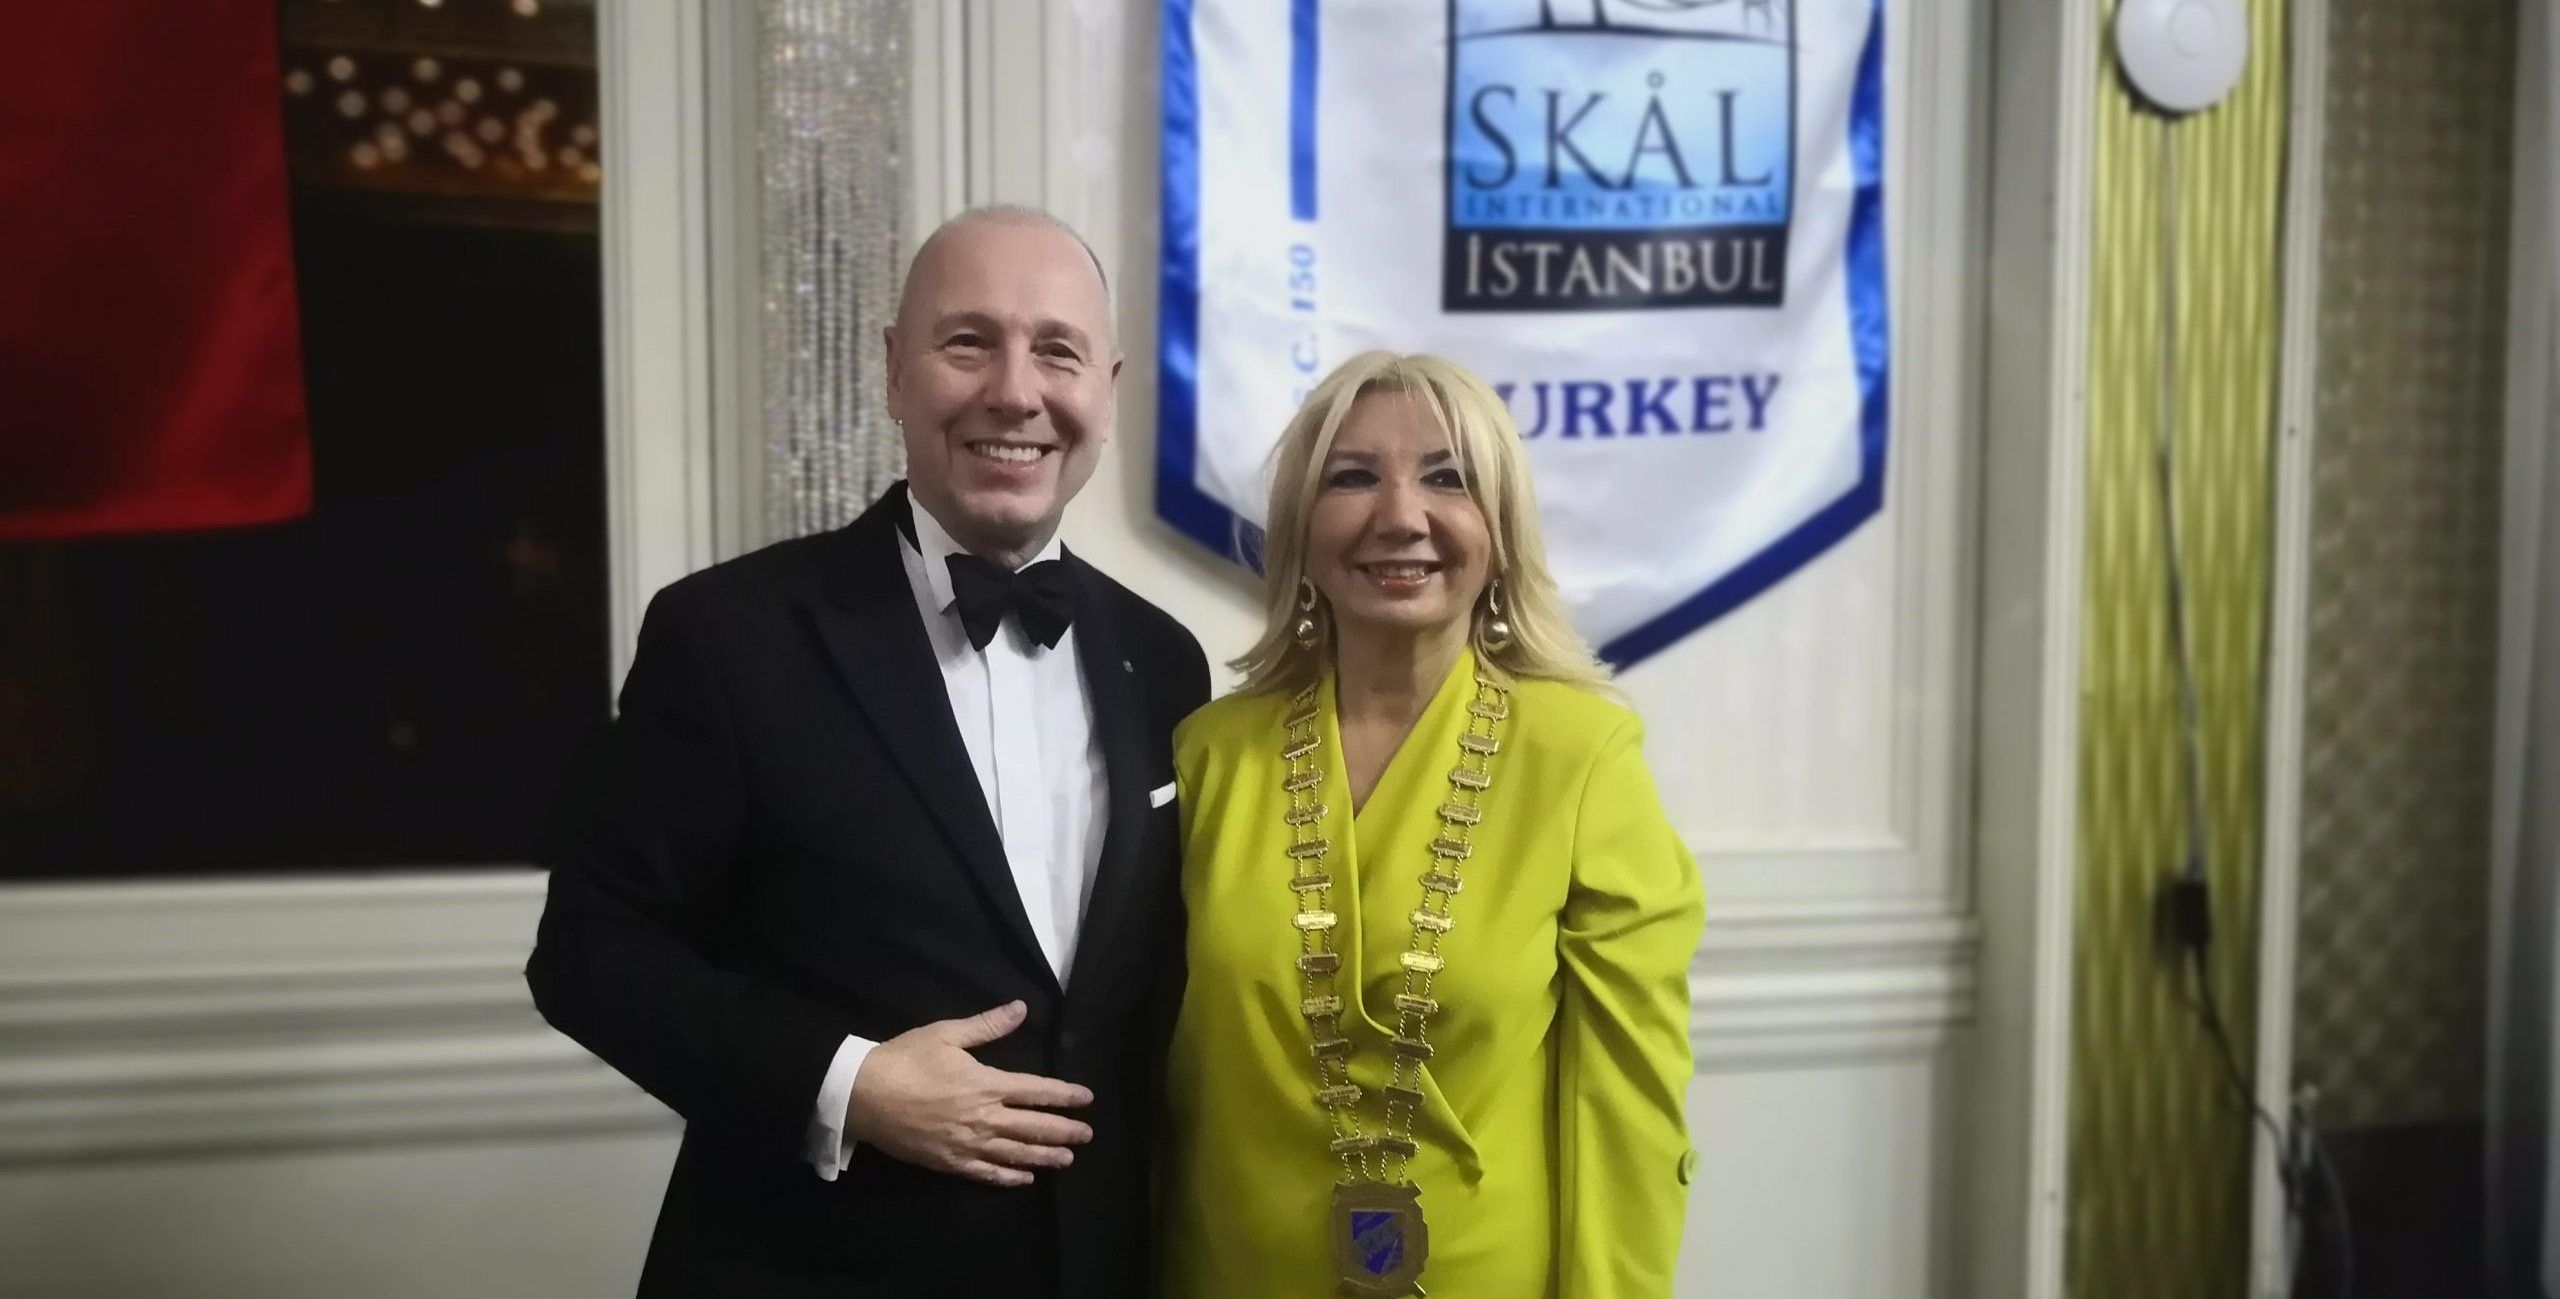 Skal İstanbul’un 33. Dönem Başkanı, Can Arınel